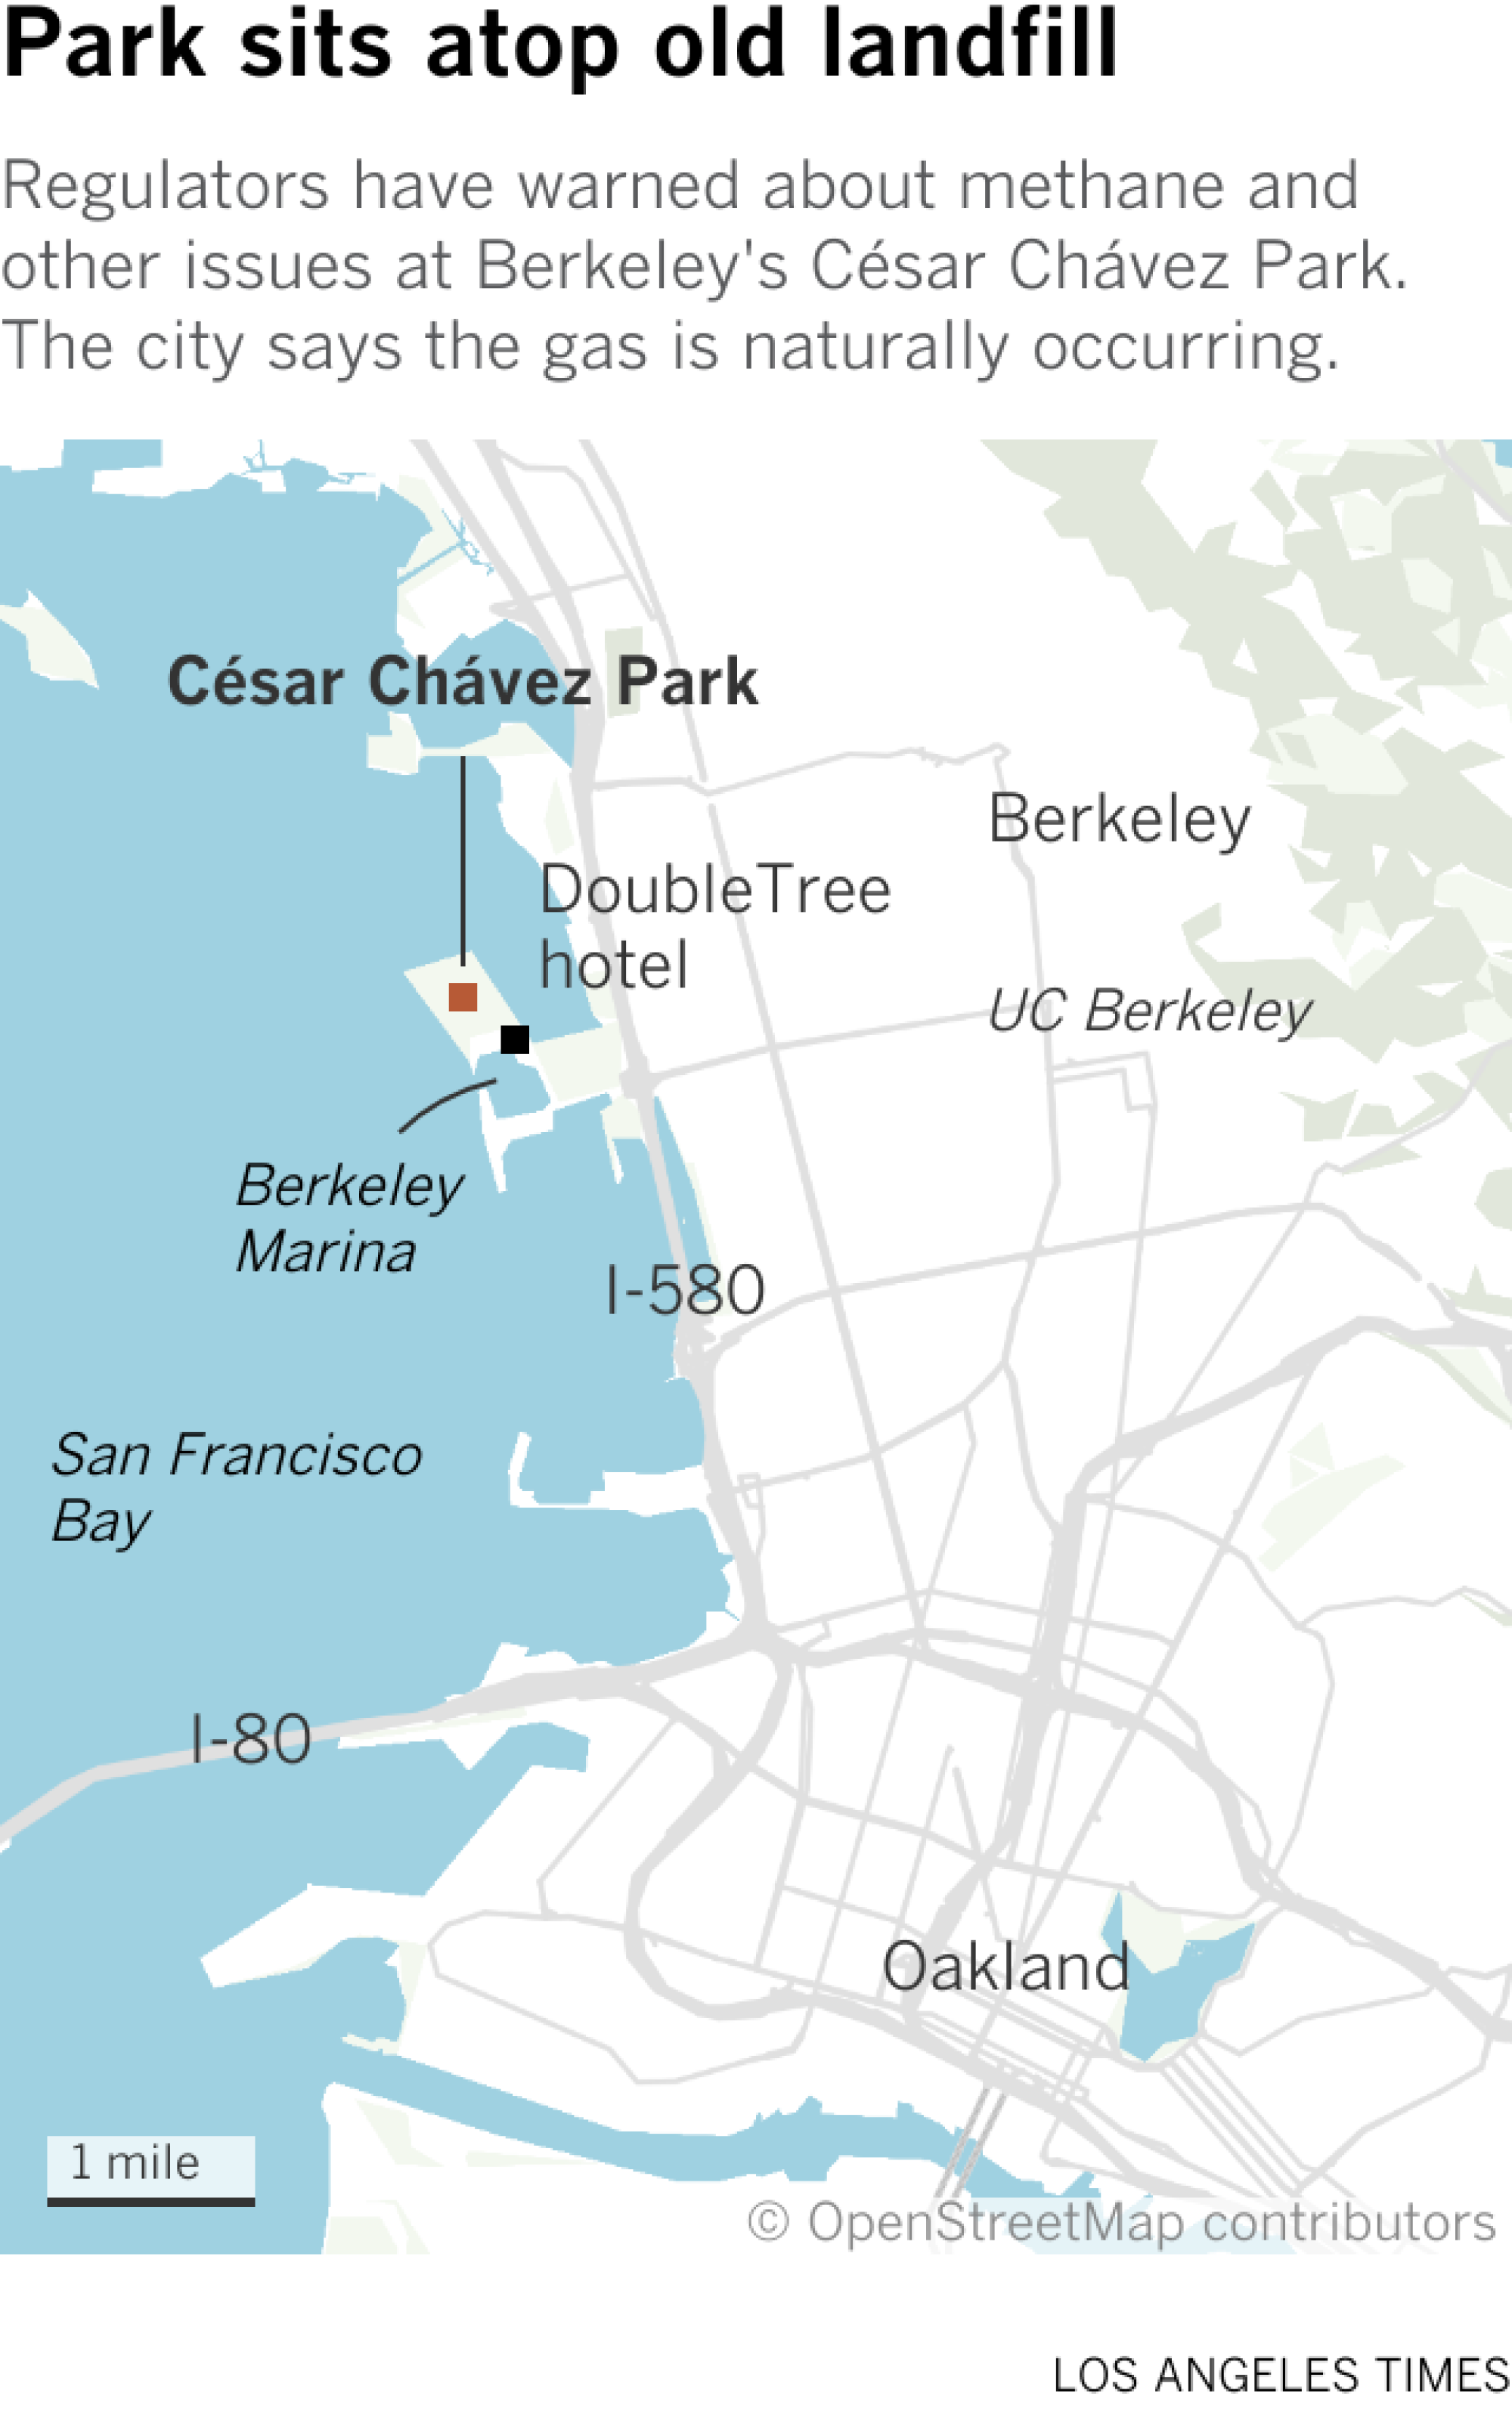 Die Karte zeigt die Lage des César Chávez Park und des nahegelegenen DoubleTree Hotels am Berkeley Marina.  Der Park liegt auf der Westseite von Berkeley.